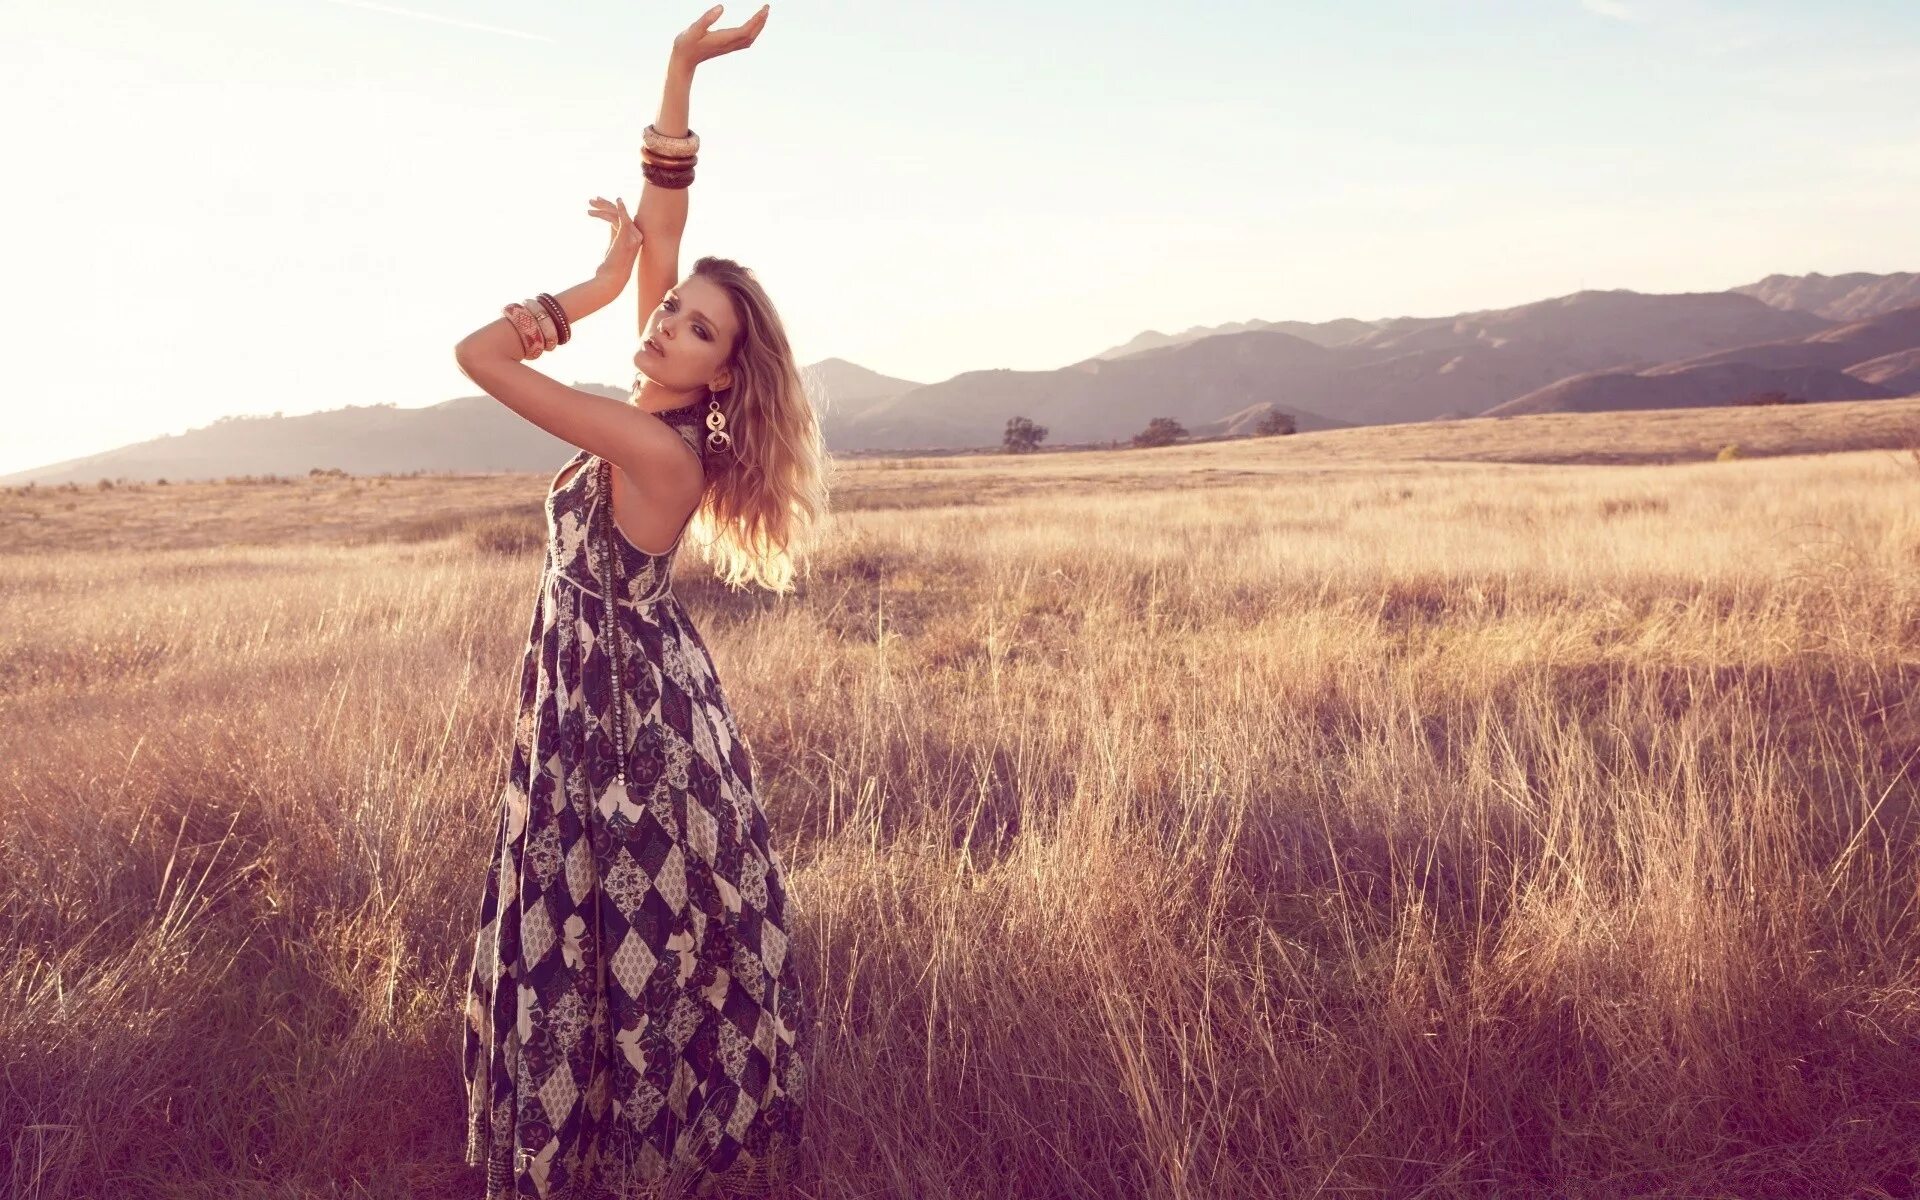 Девушка в летнем платье. Девушка в платье летом. Девушка танцует в поле. Девушка в платье летнем. Фотосессия в поле летом.